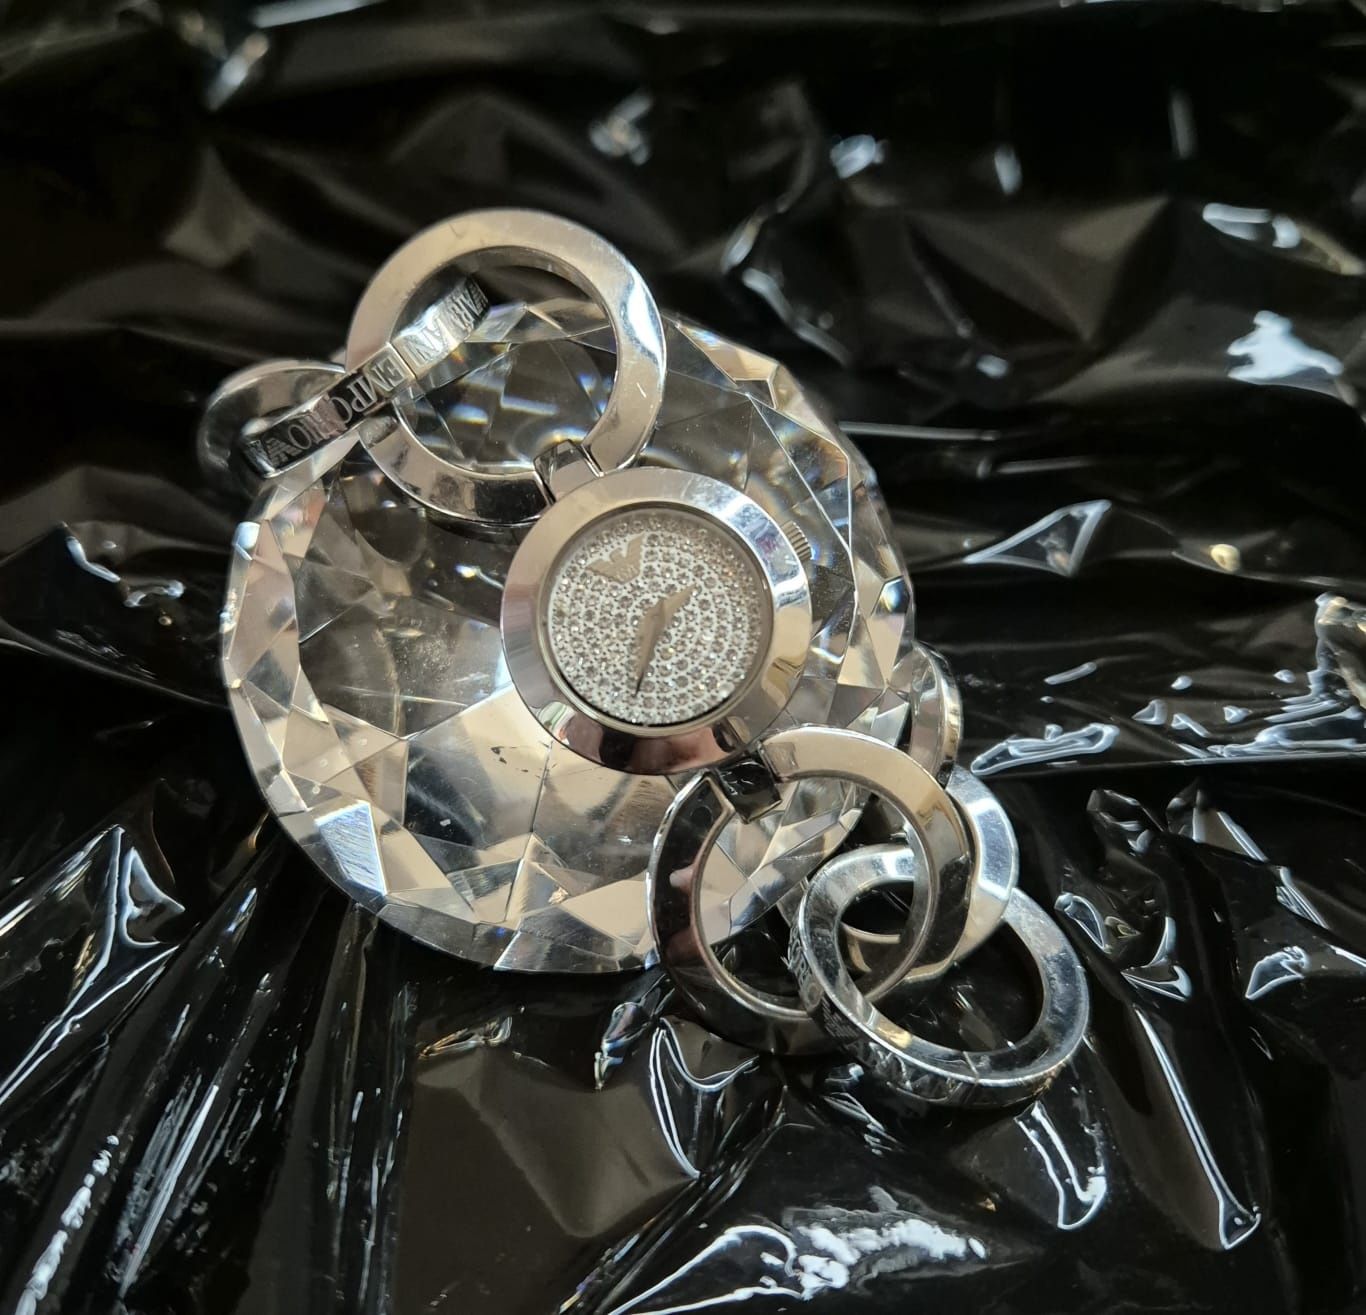 Zegarek Emporio Armani z cyferblatem wysadzanym kryształkami Swarovski